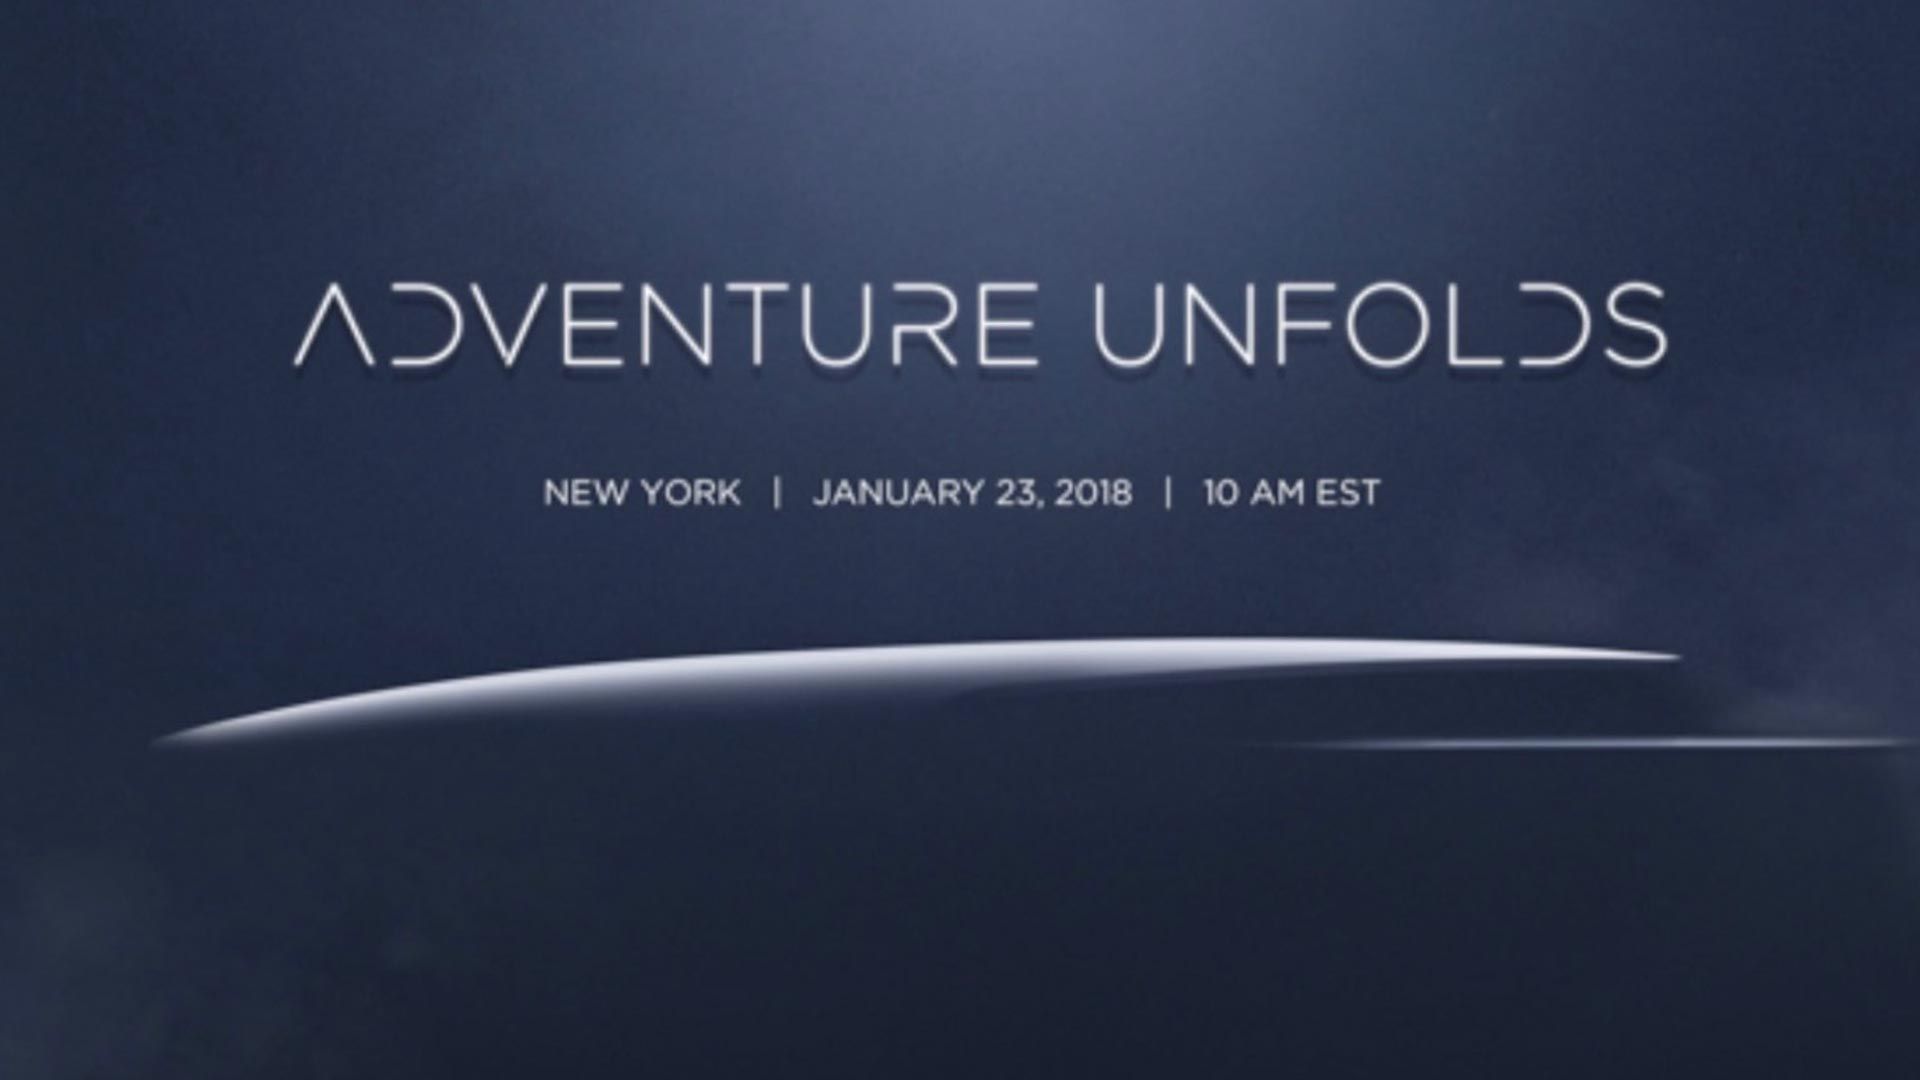 Adventure Unfold, a New York il 23 Gennaio la novità di DJI